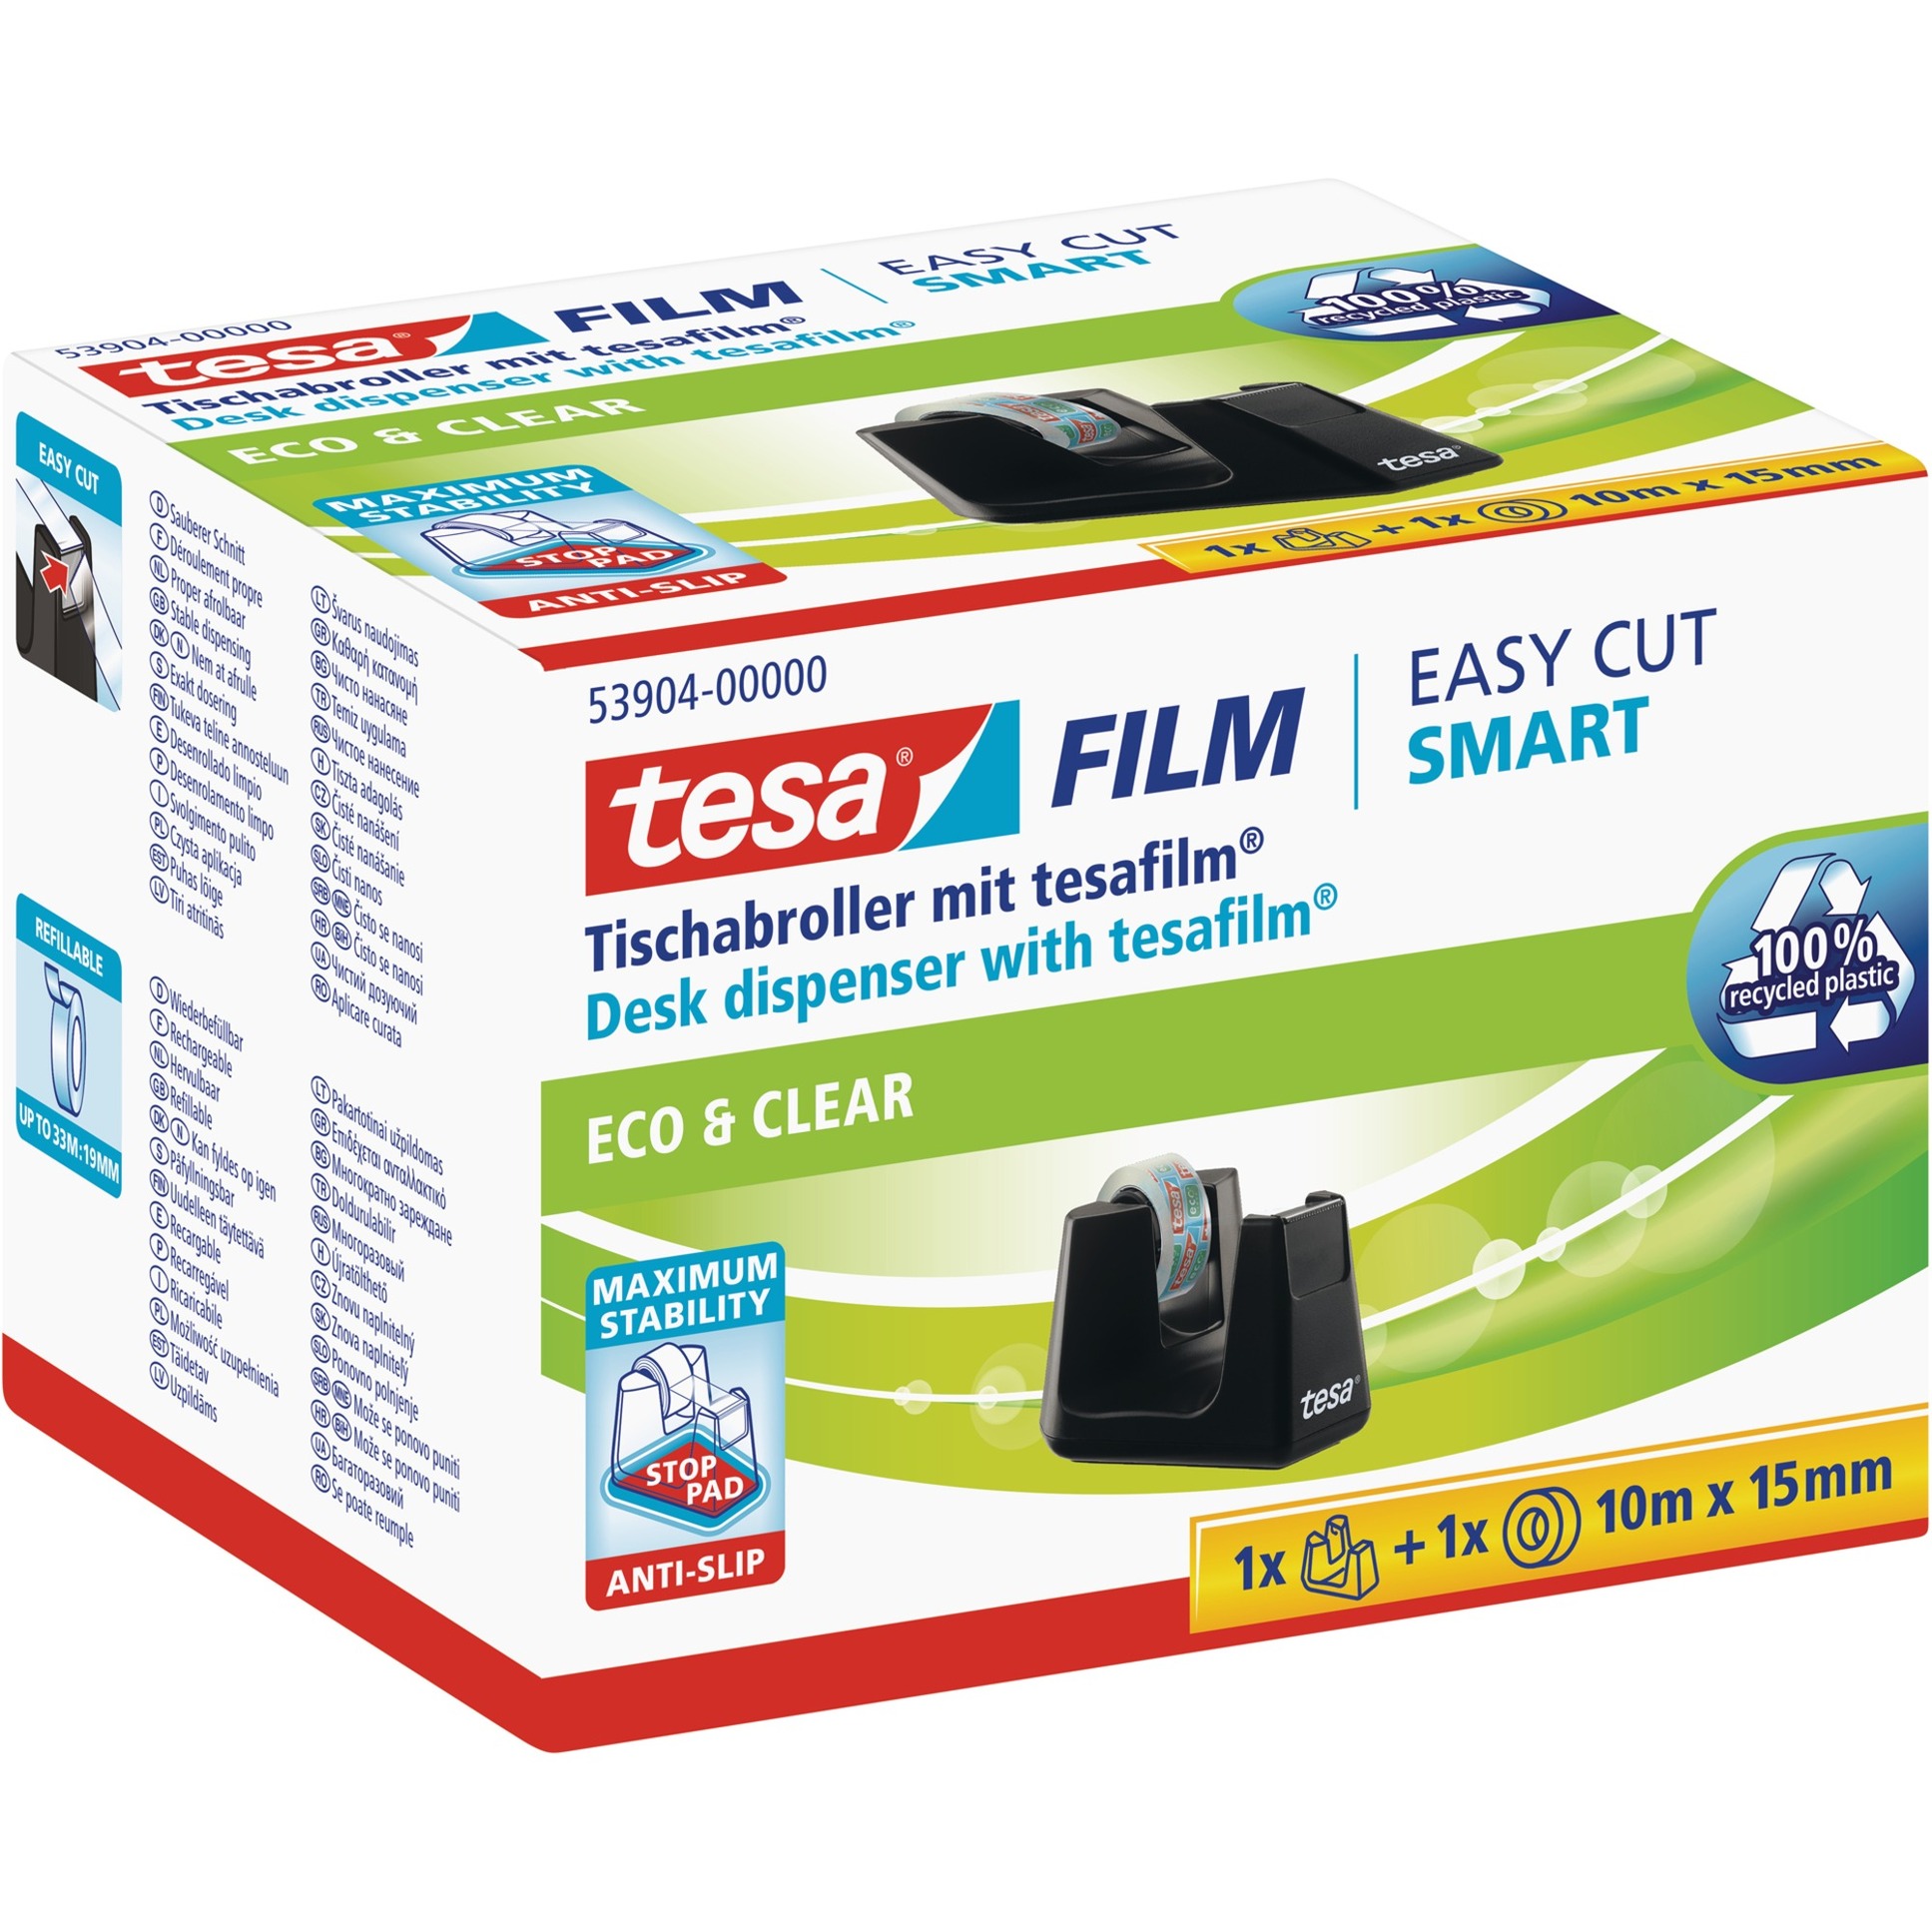 Image of Alternate - Tischabroller Easy Cut Smart + 1 Rolle eco & clear online einkaufen bei Alternate